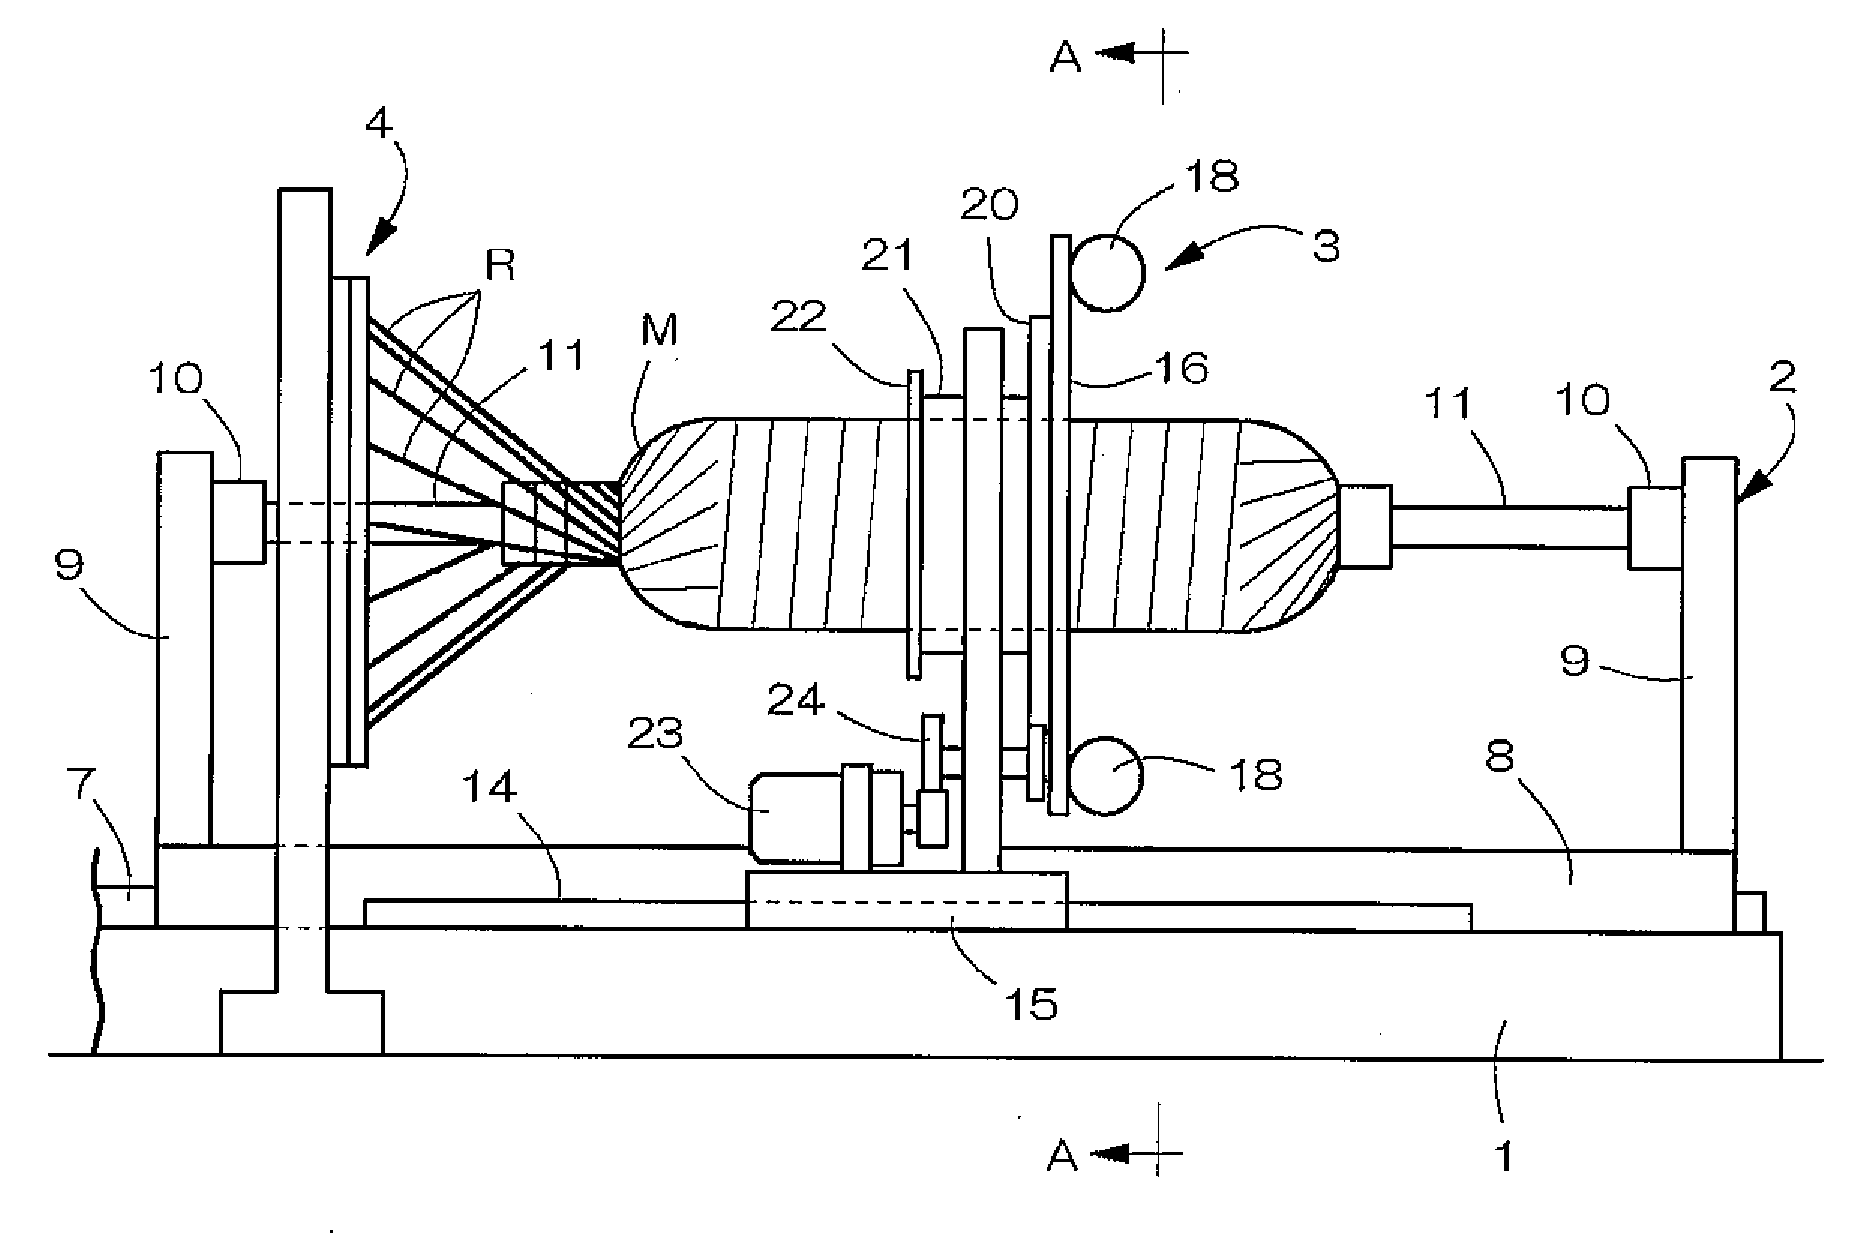 Filament Winding Apparatus